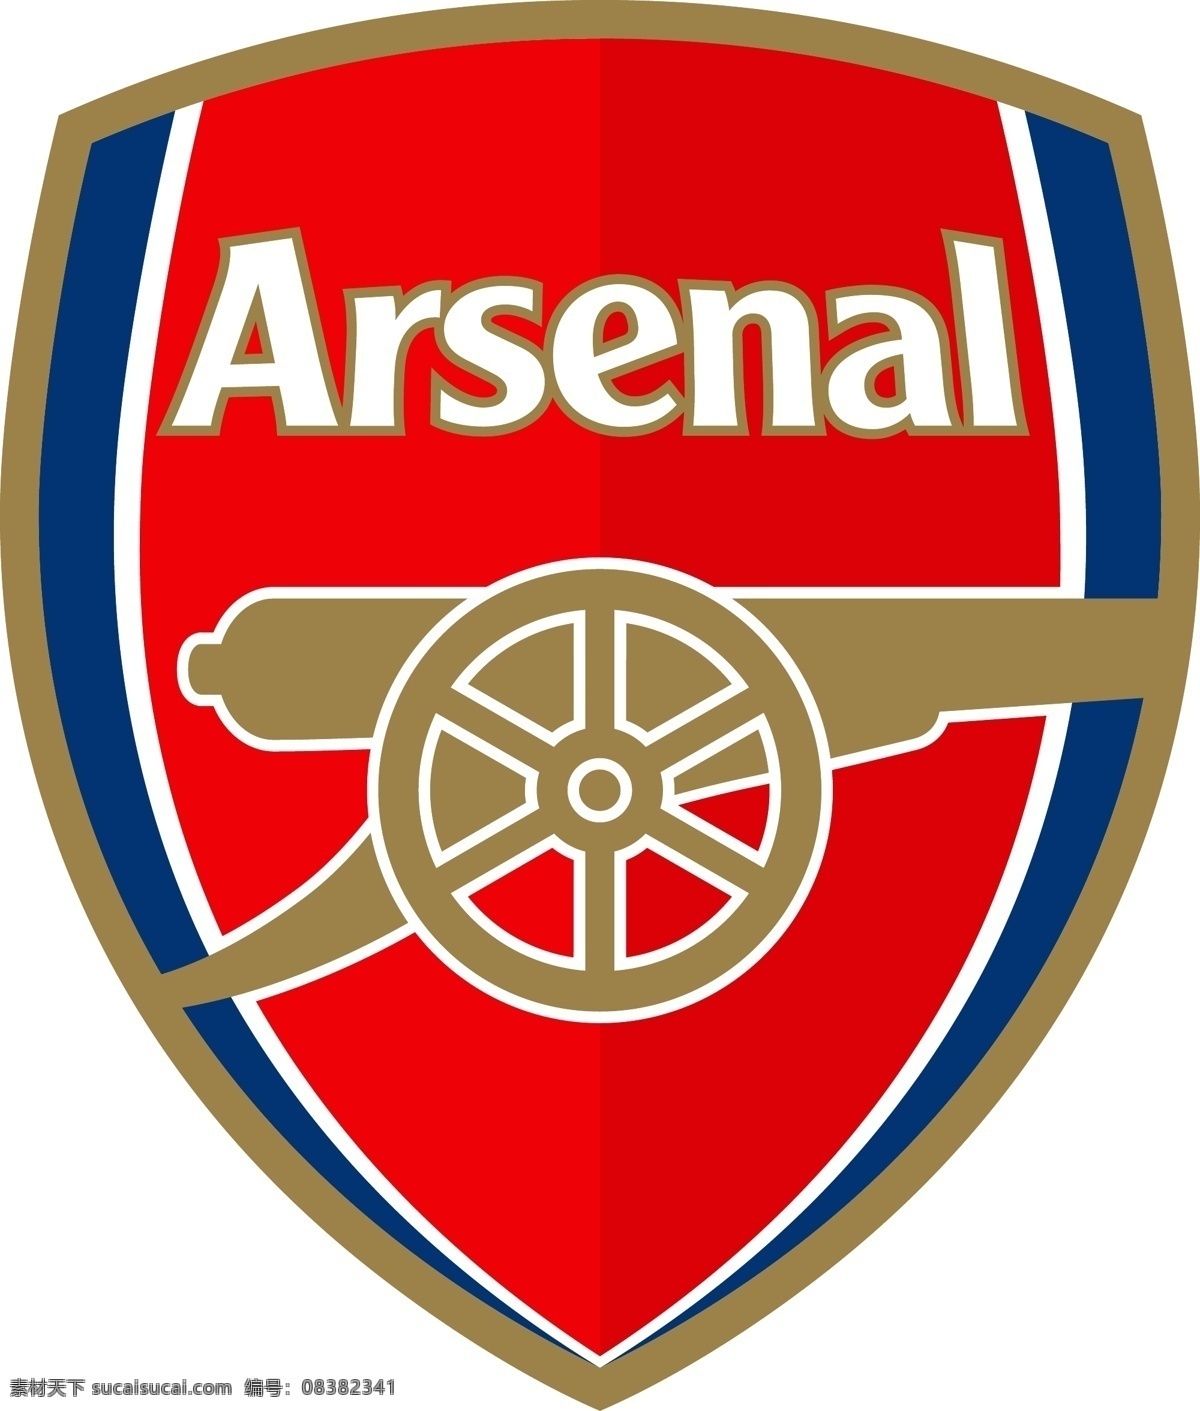 阿森纳 足球 俱乐部 徽标 伦敦 枪手 英格兰 超级 联赛 英超 欧冠 欧洲冠军联赛 欧联 欧洲联赛 欧罗巴联赛 欧洲超级杯 欧洲主流联赛 logo设计